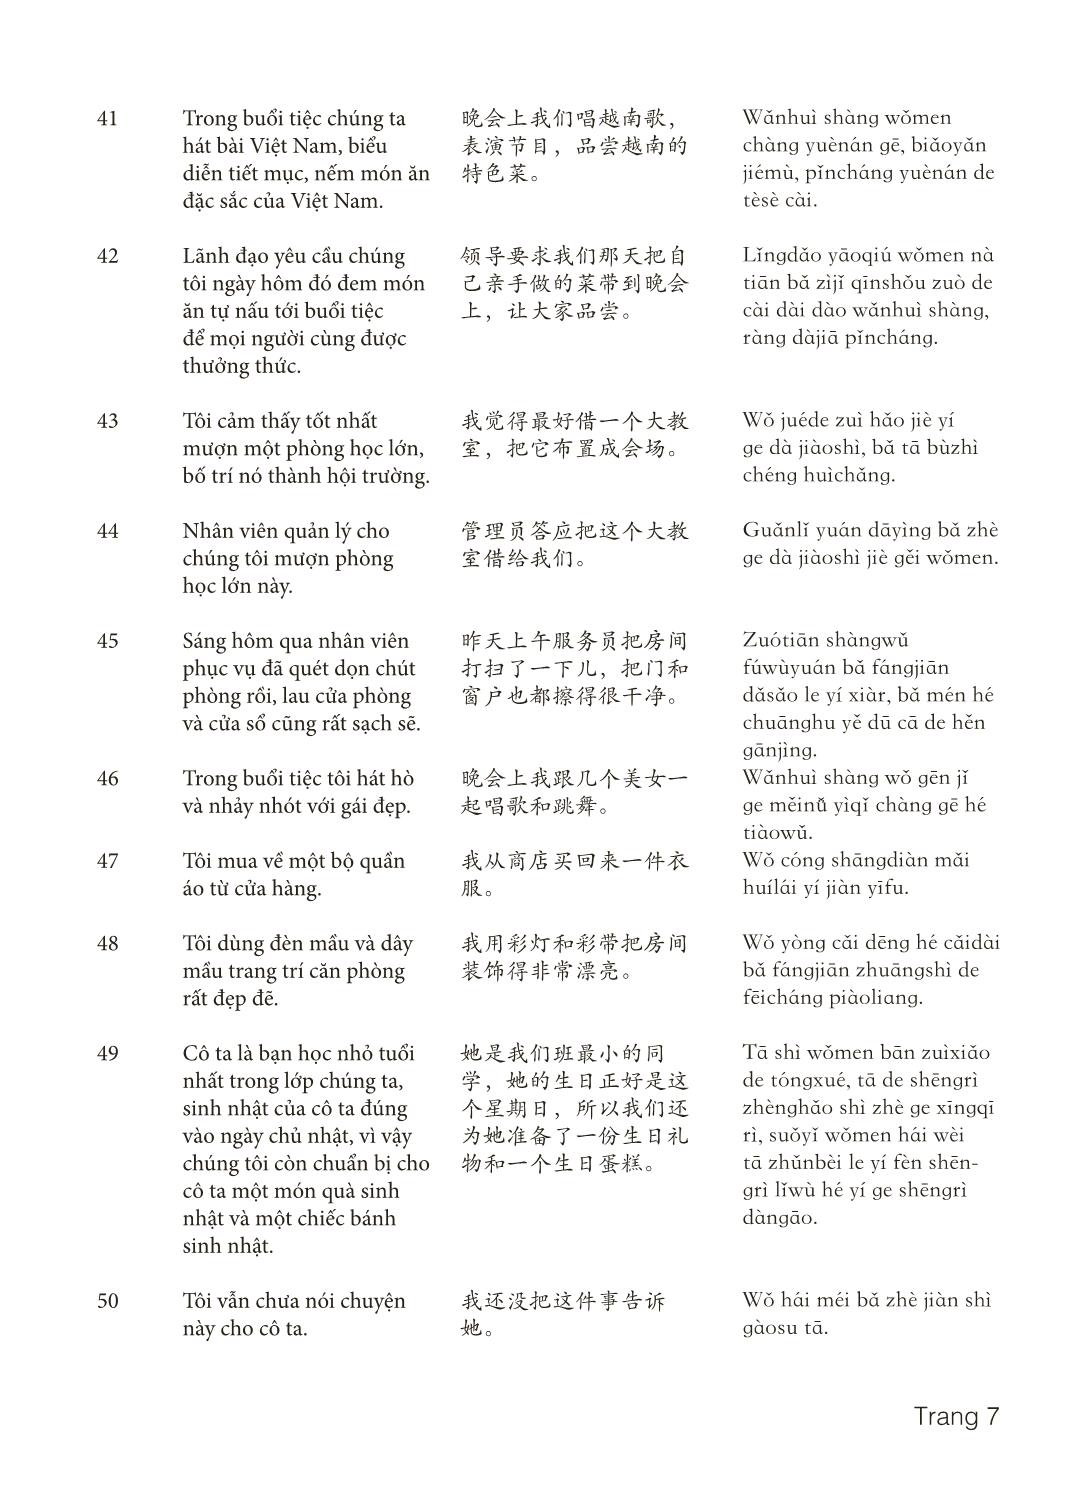 3000 Câu đàm thoại tiếng Hoa - Phần 21 trang 7